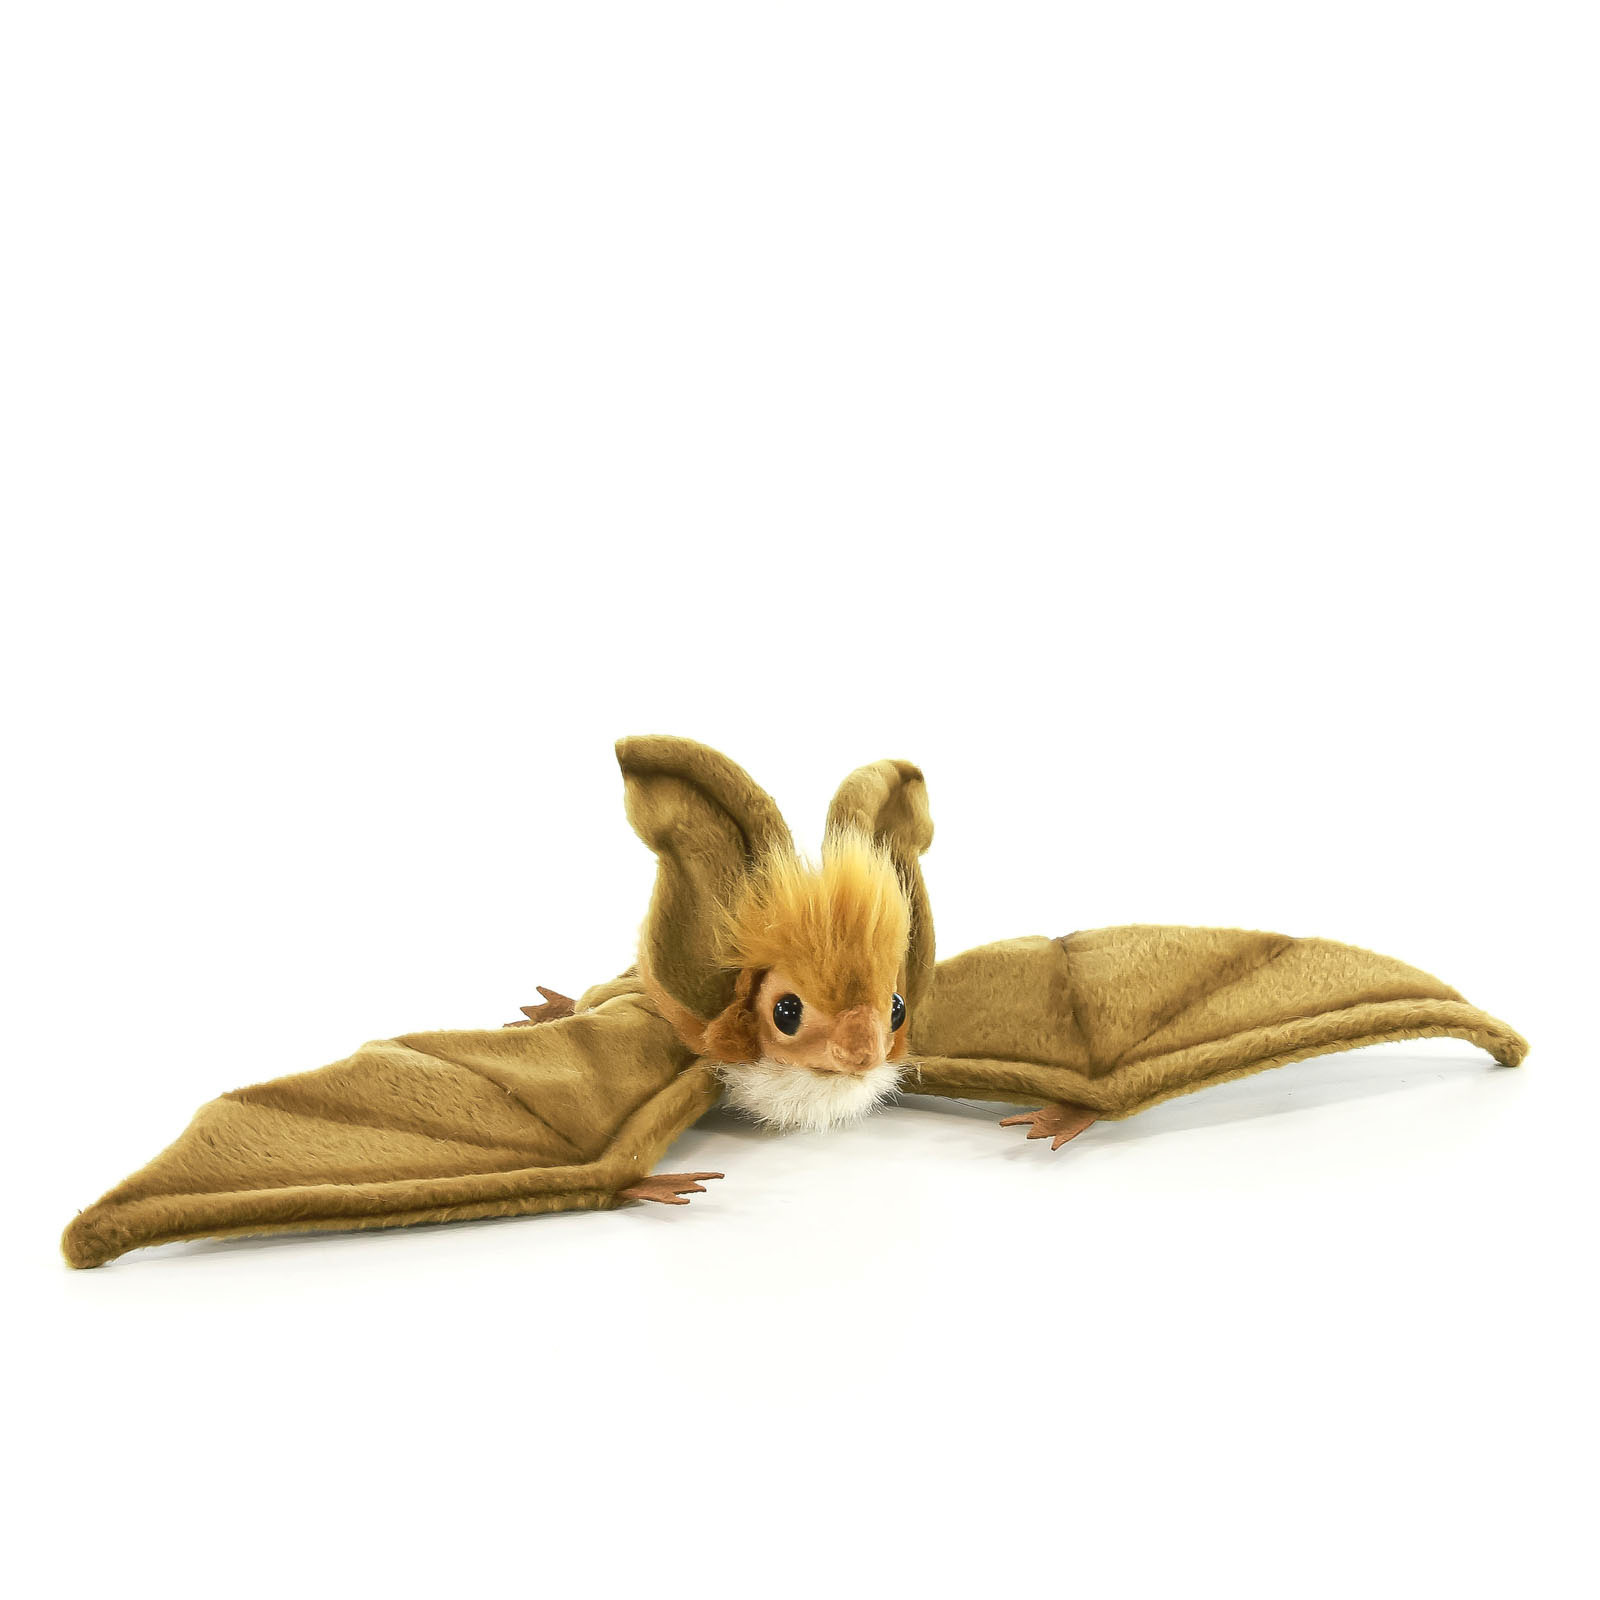 Реалистичная мягкая игрушка Hansa Creation Коричневая летучая мышь парящая, 37 см